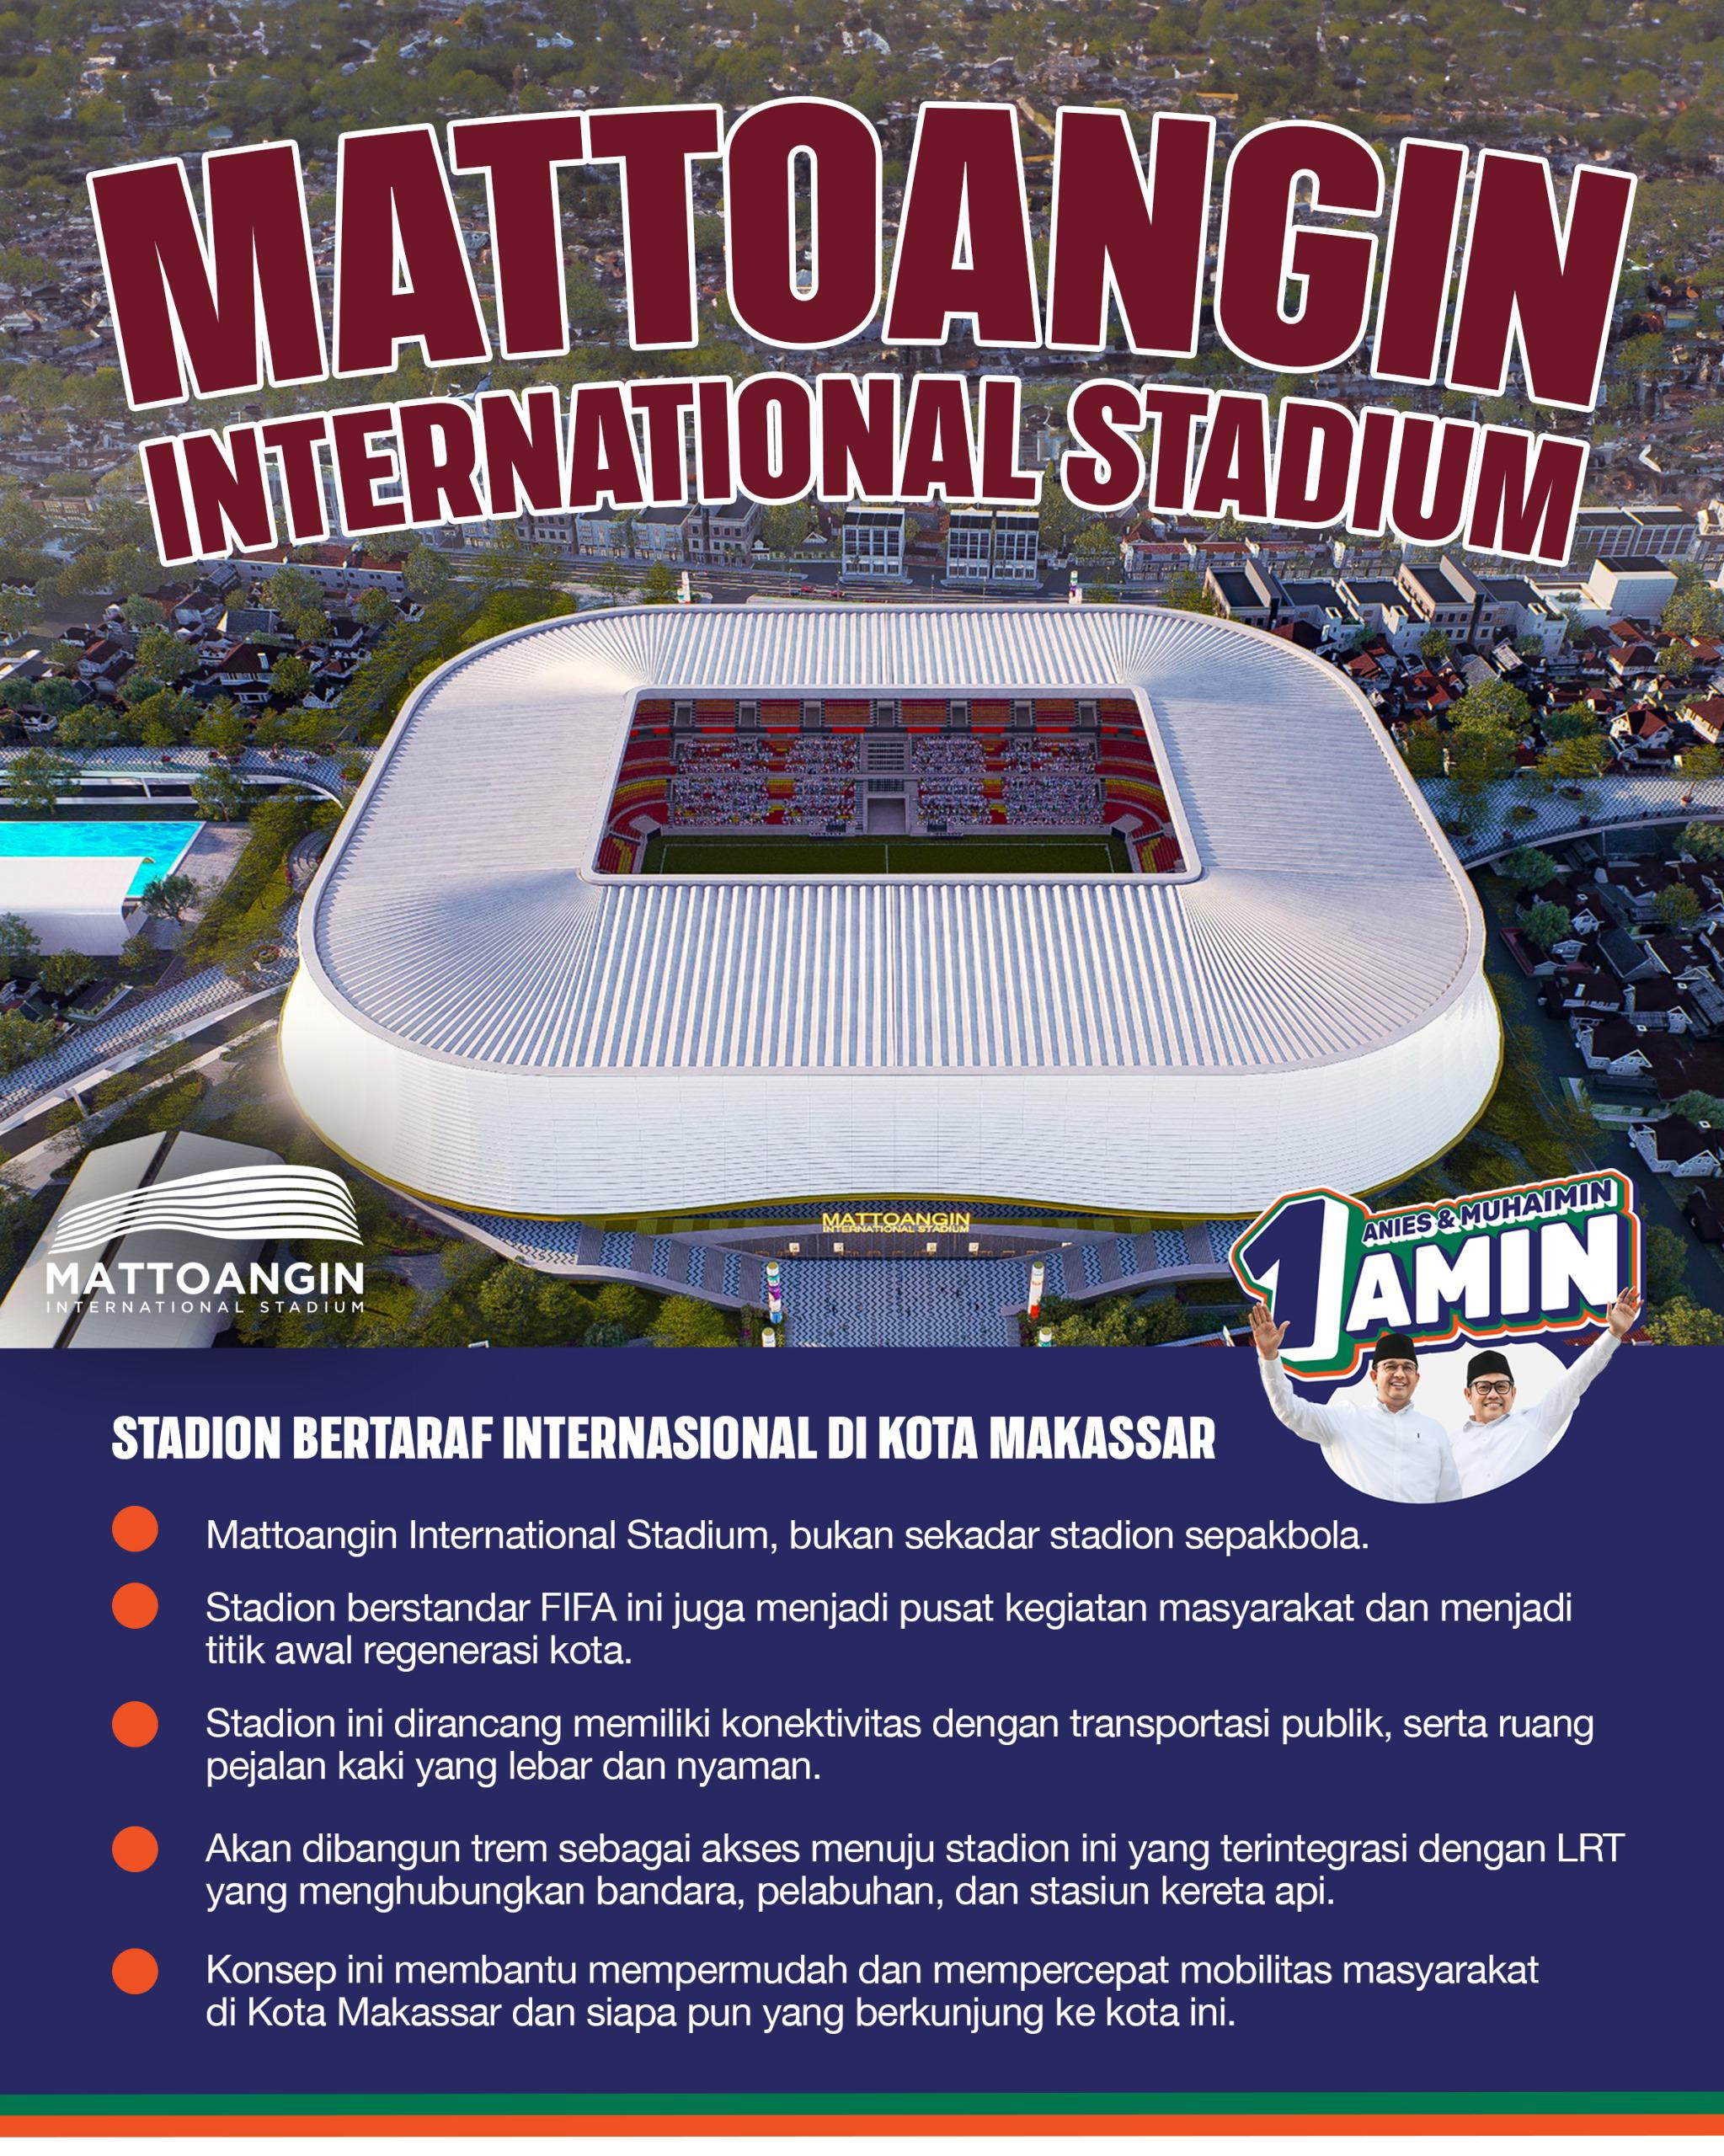 Anies Bangun Mattoangin International Stadium di Sulsel, Eks Dirut Persija: Stadion itu Titik Awal Kemajuan Sepak Bola di Satu daerah